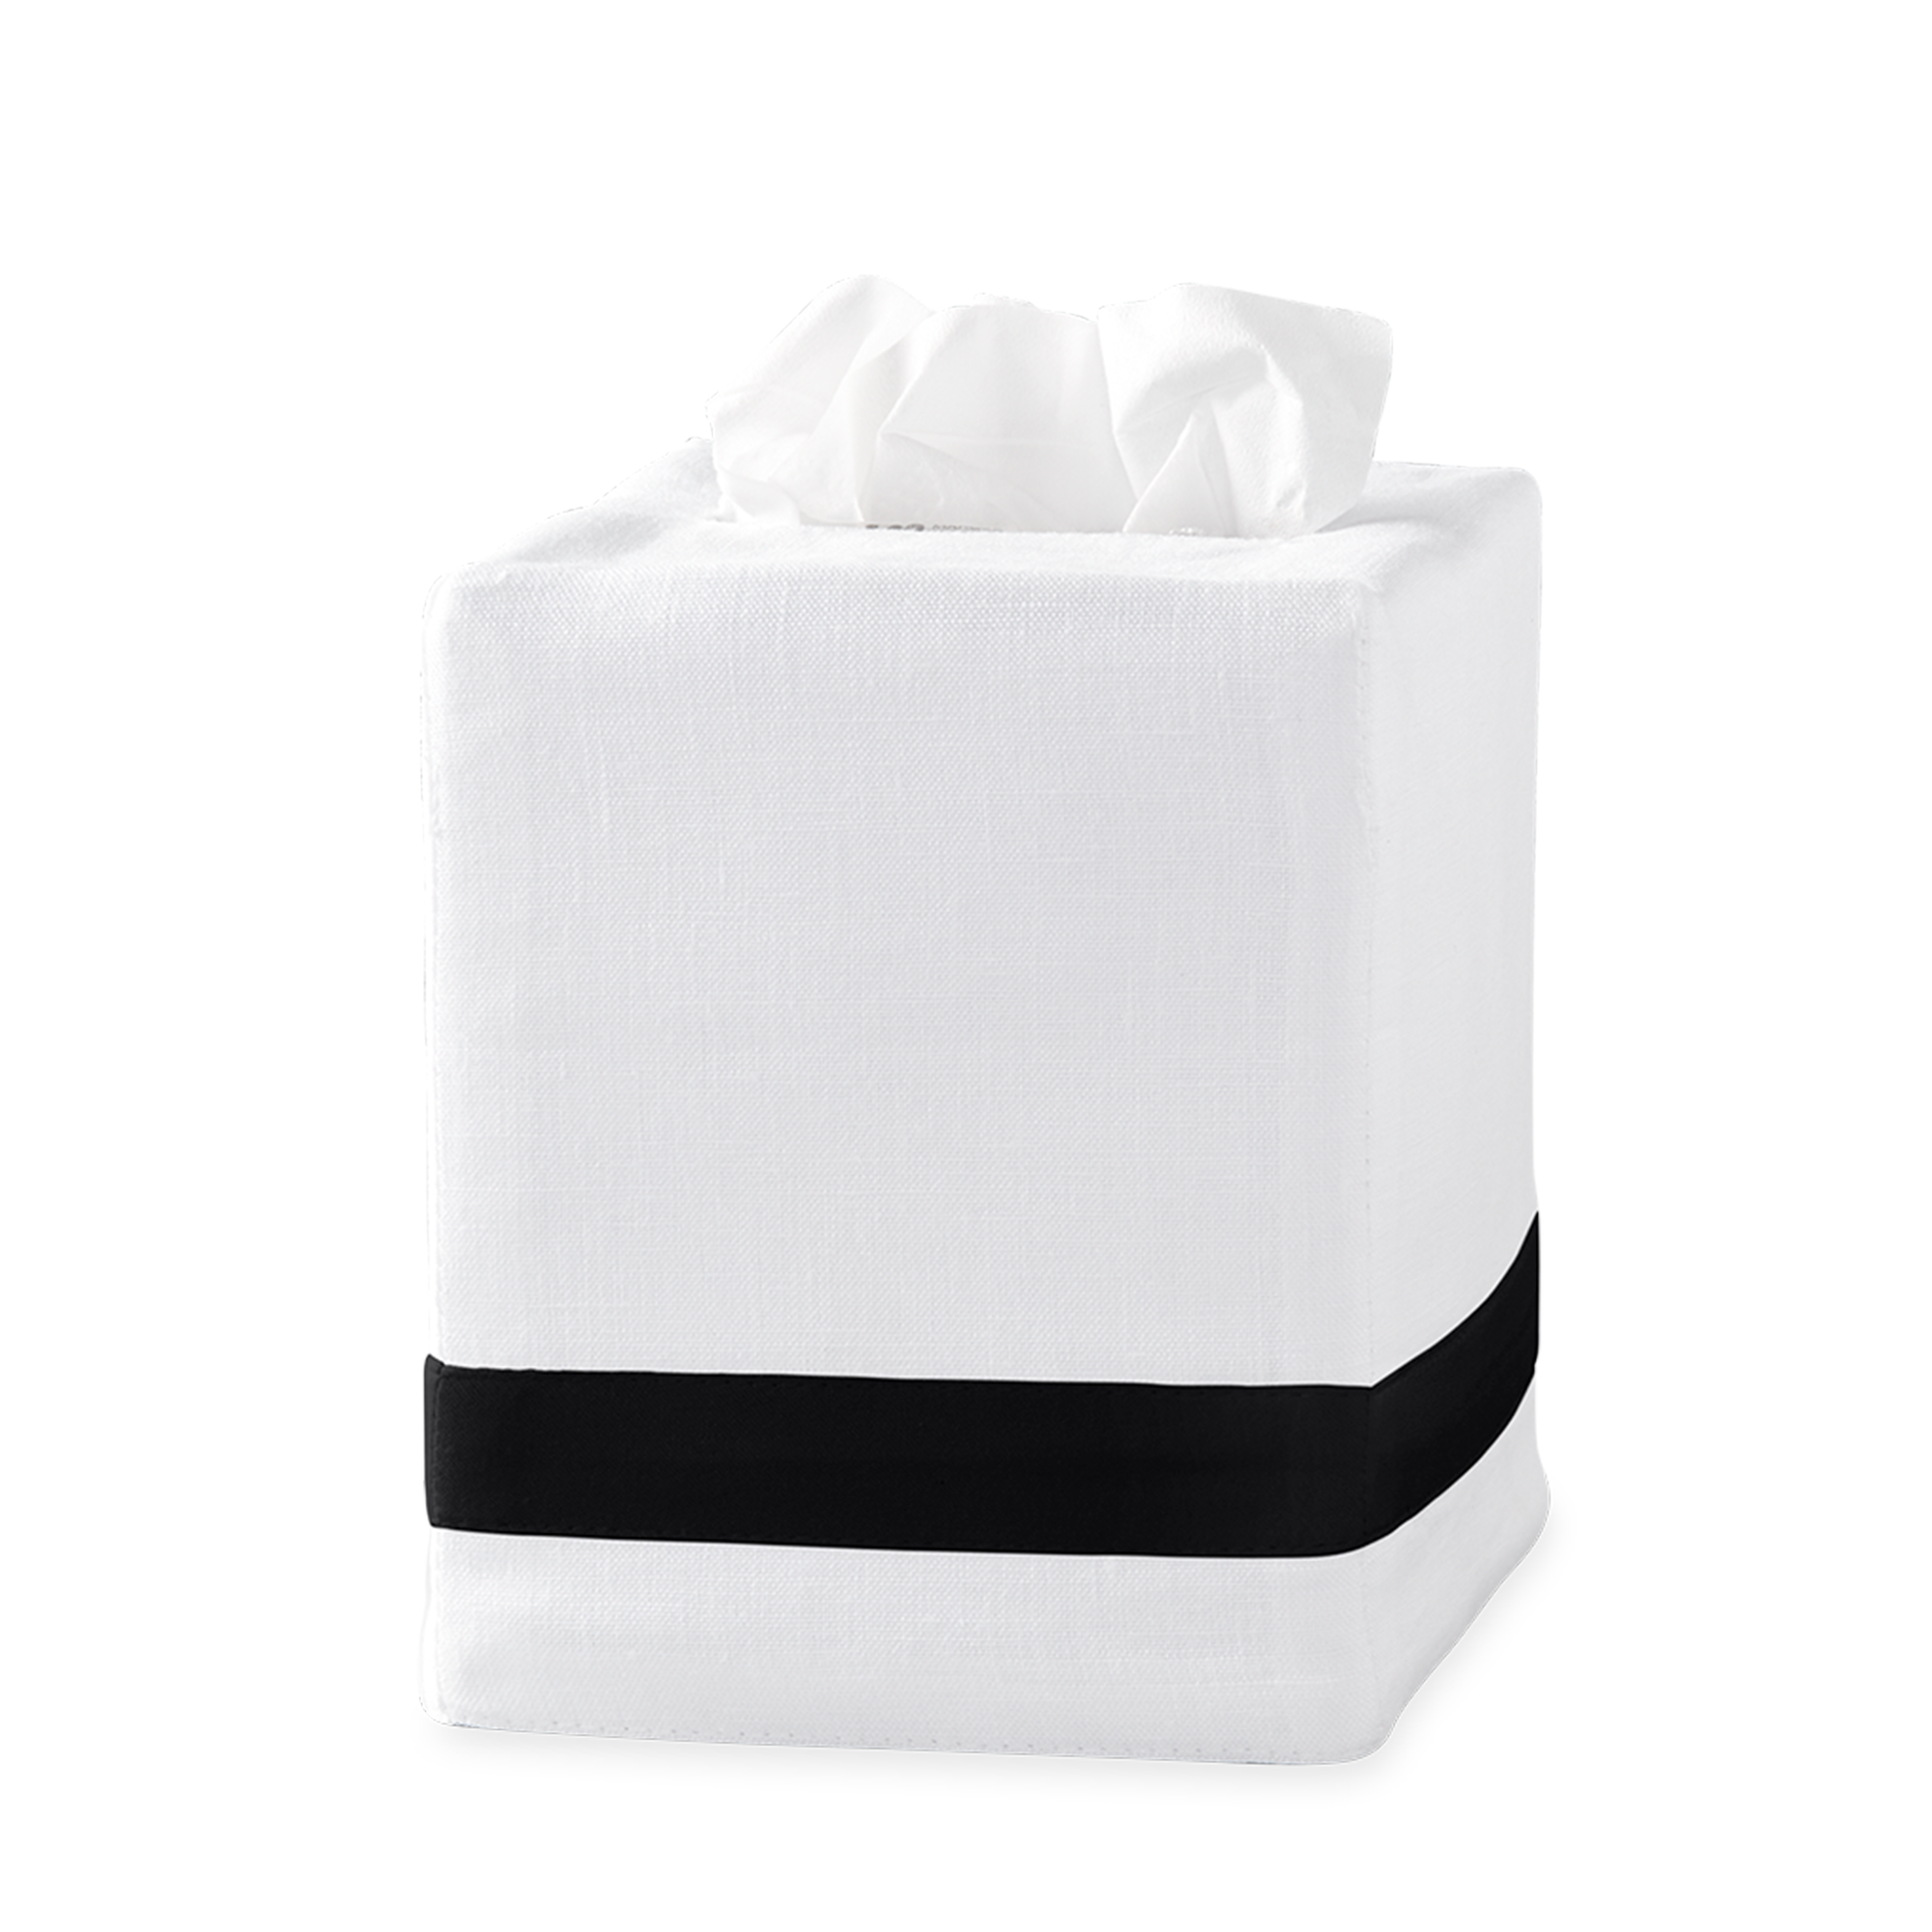 Silo Image of Matouk Lowell Tissue Box Cover in Color Black